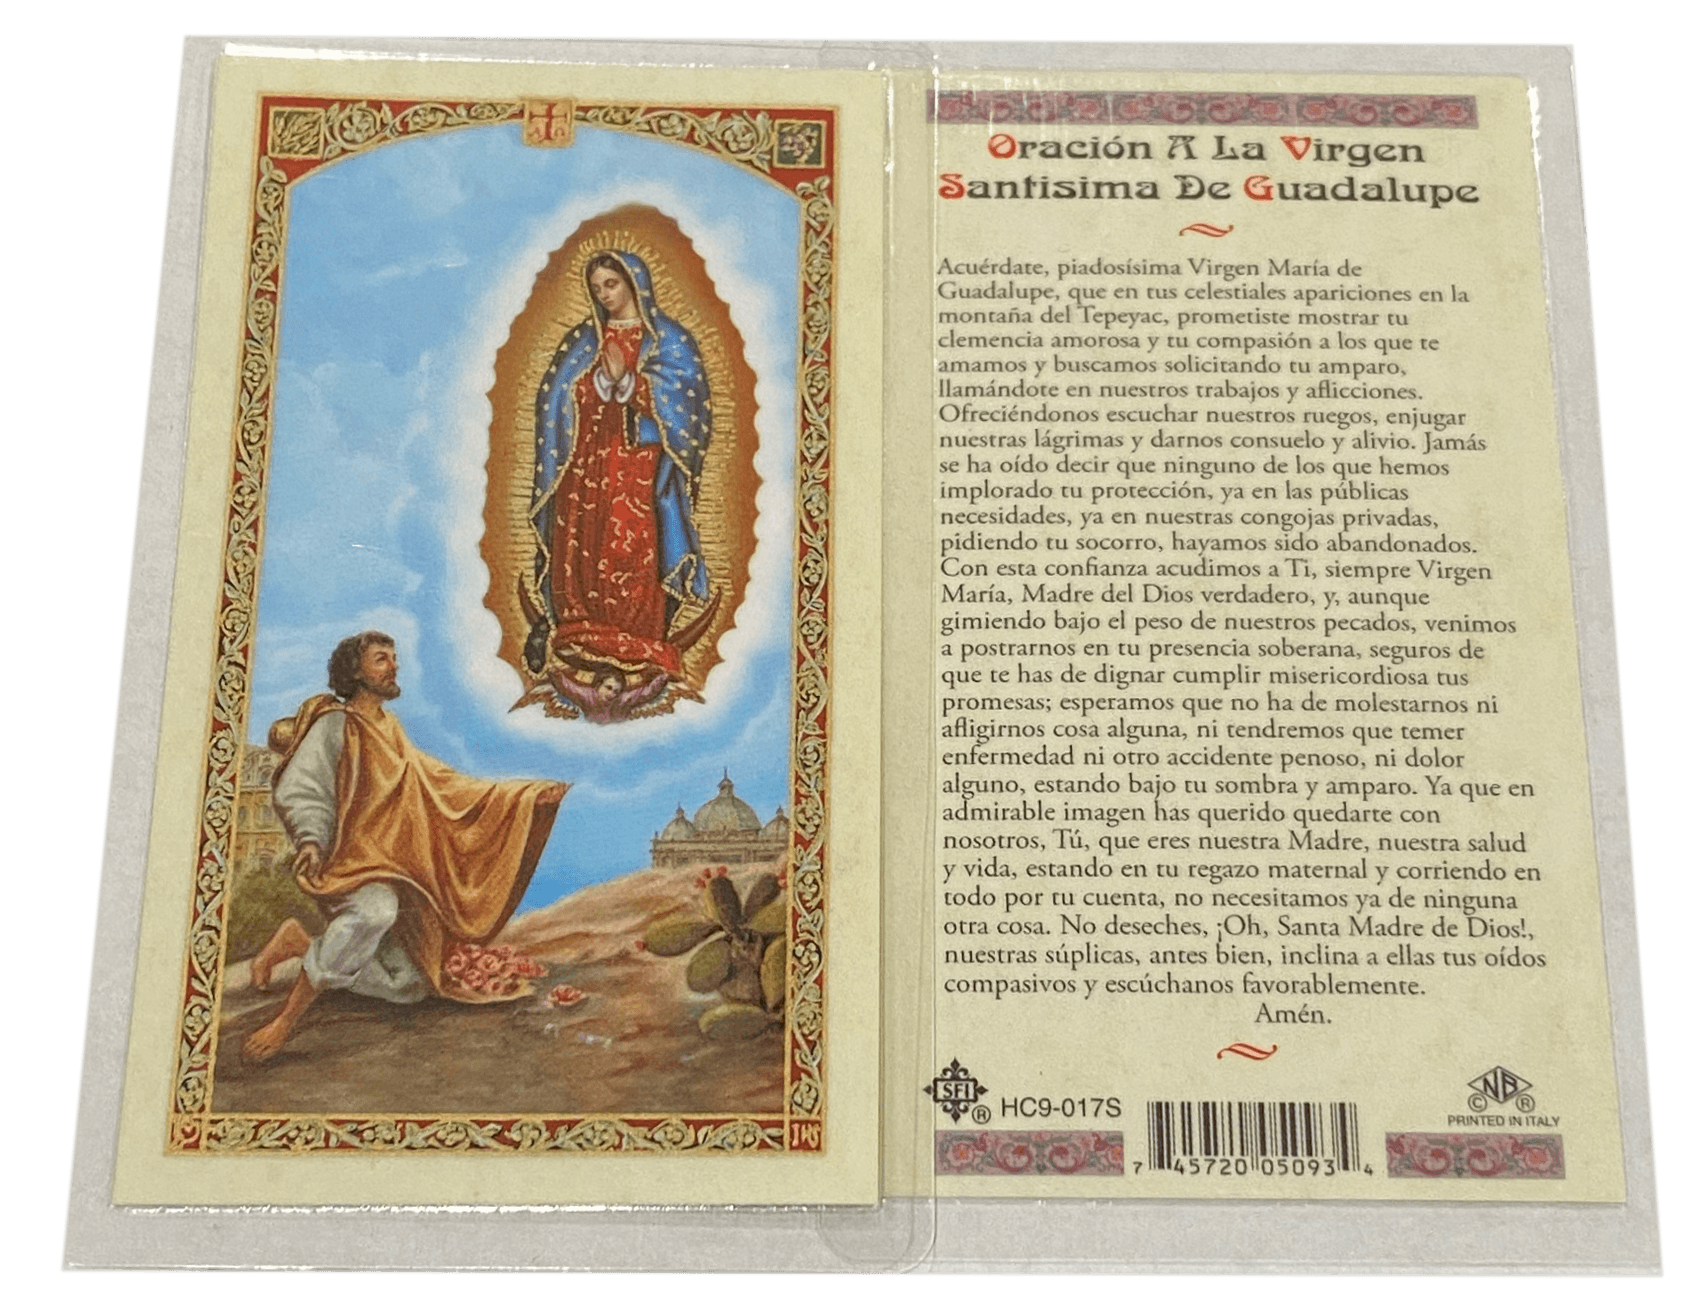 Prayer Card Prayer De Oracion A La Virgen Santisima De Guadalupe HC9-017S Laminated - Ysleta Mission Gift Shop- VOTED El Paso's Best Gift Shop